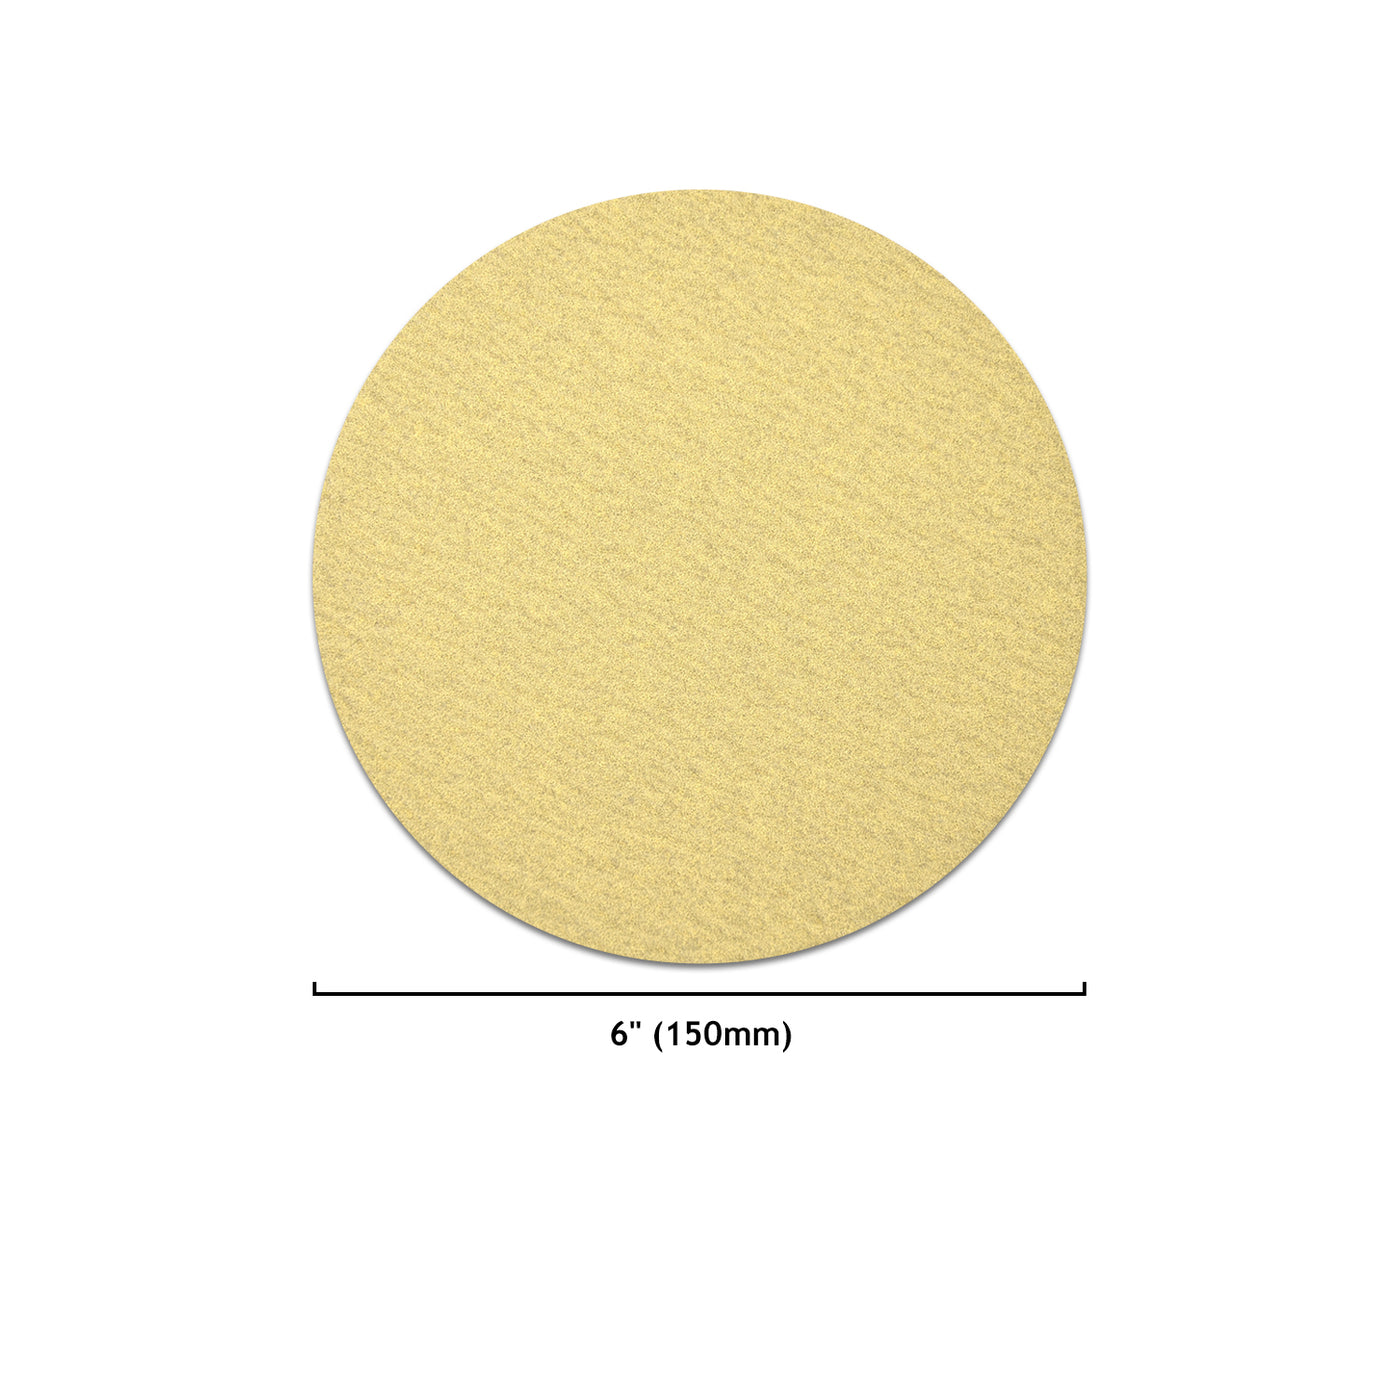 6 Inch Yellow Grain Sanding Discs